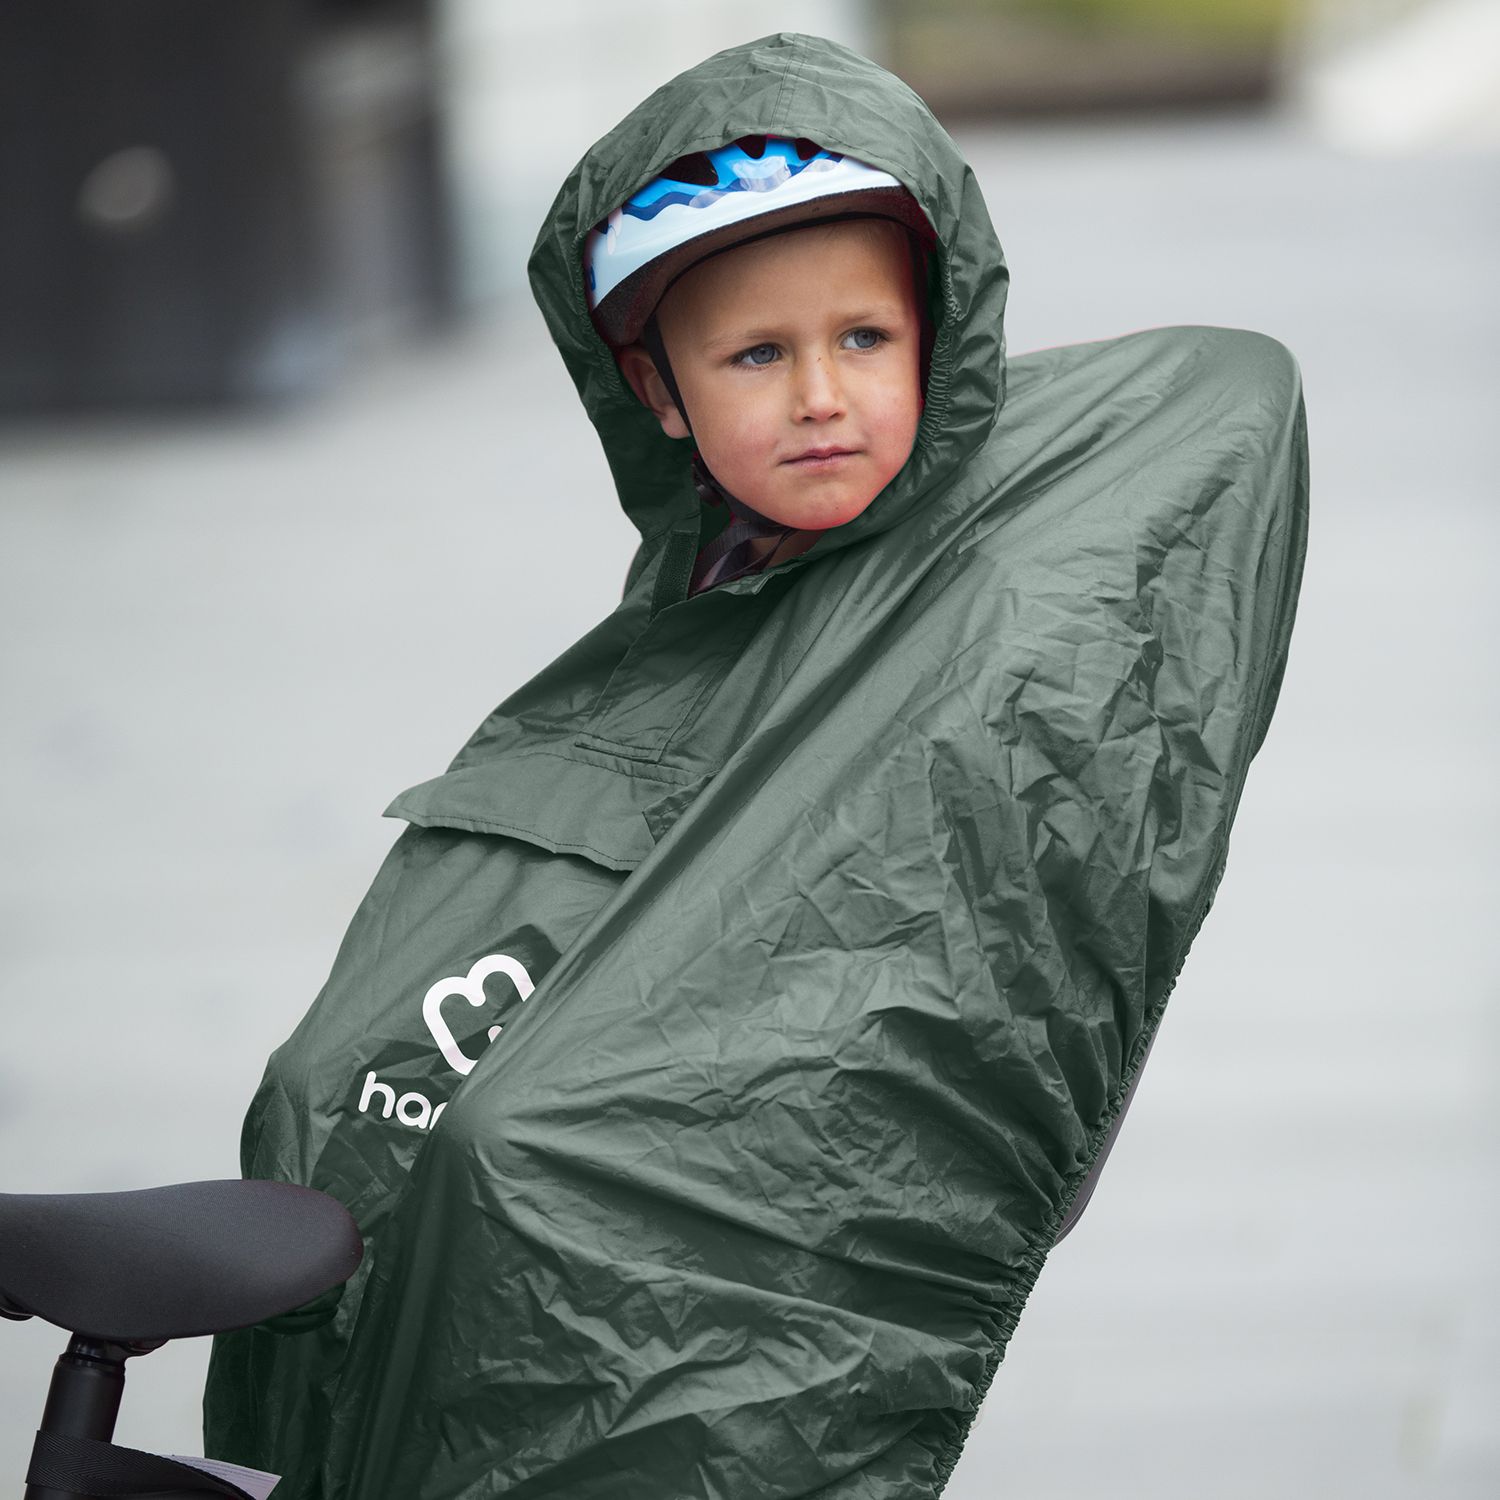 Housse de pluie pour siège enfant vélo / housse de pluie pour